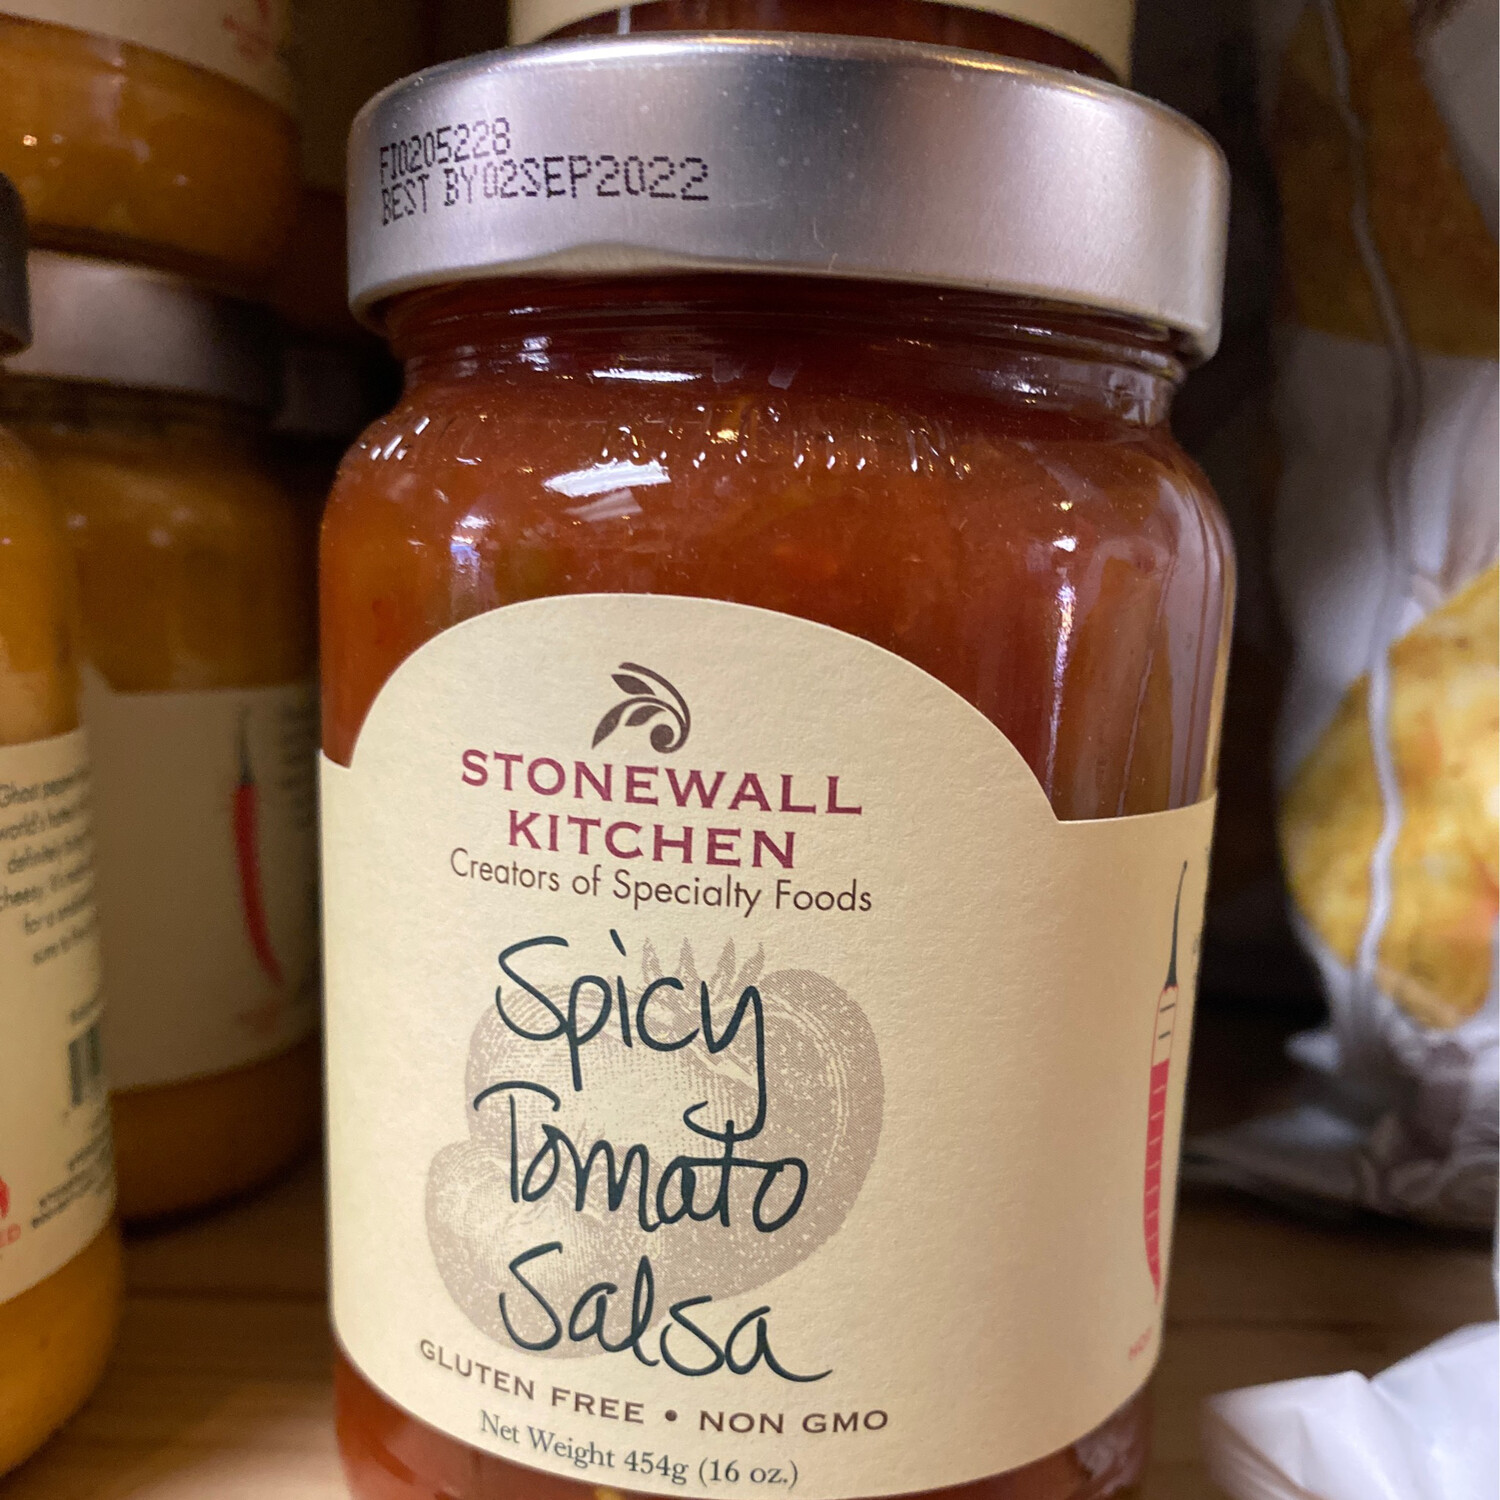 Stonewall Spicy Tomato Salsa